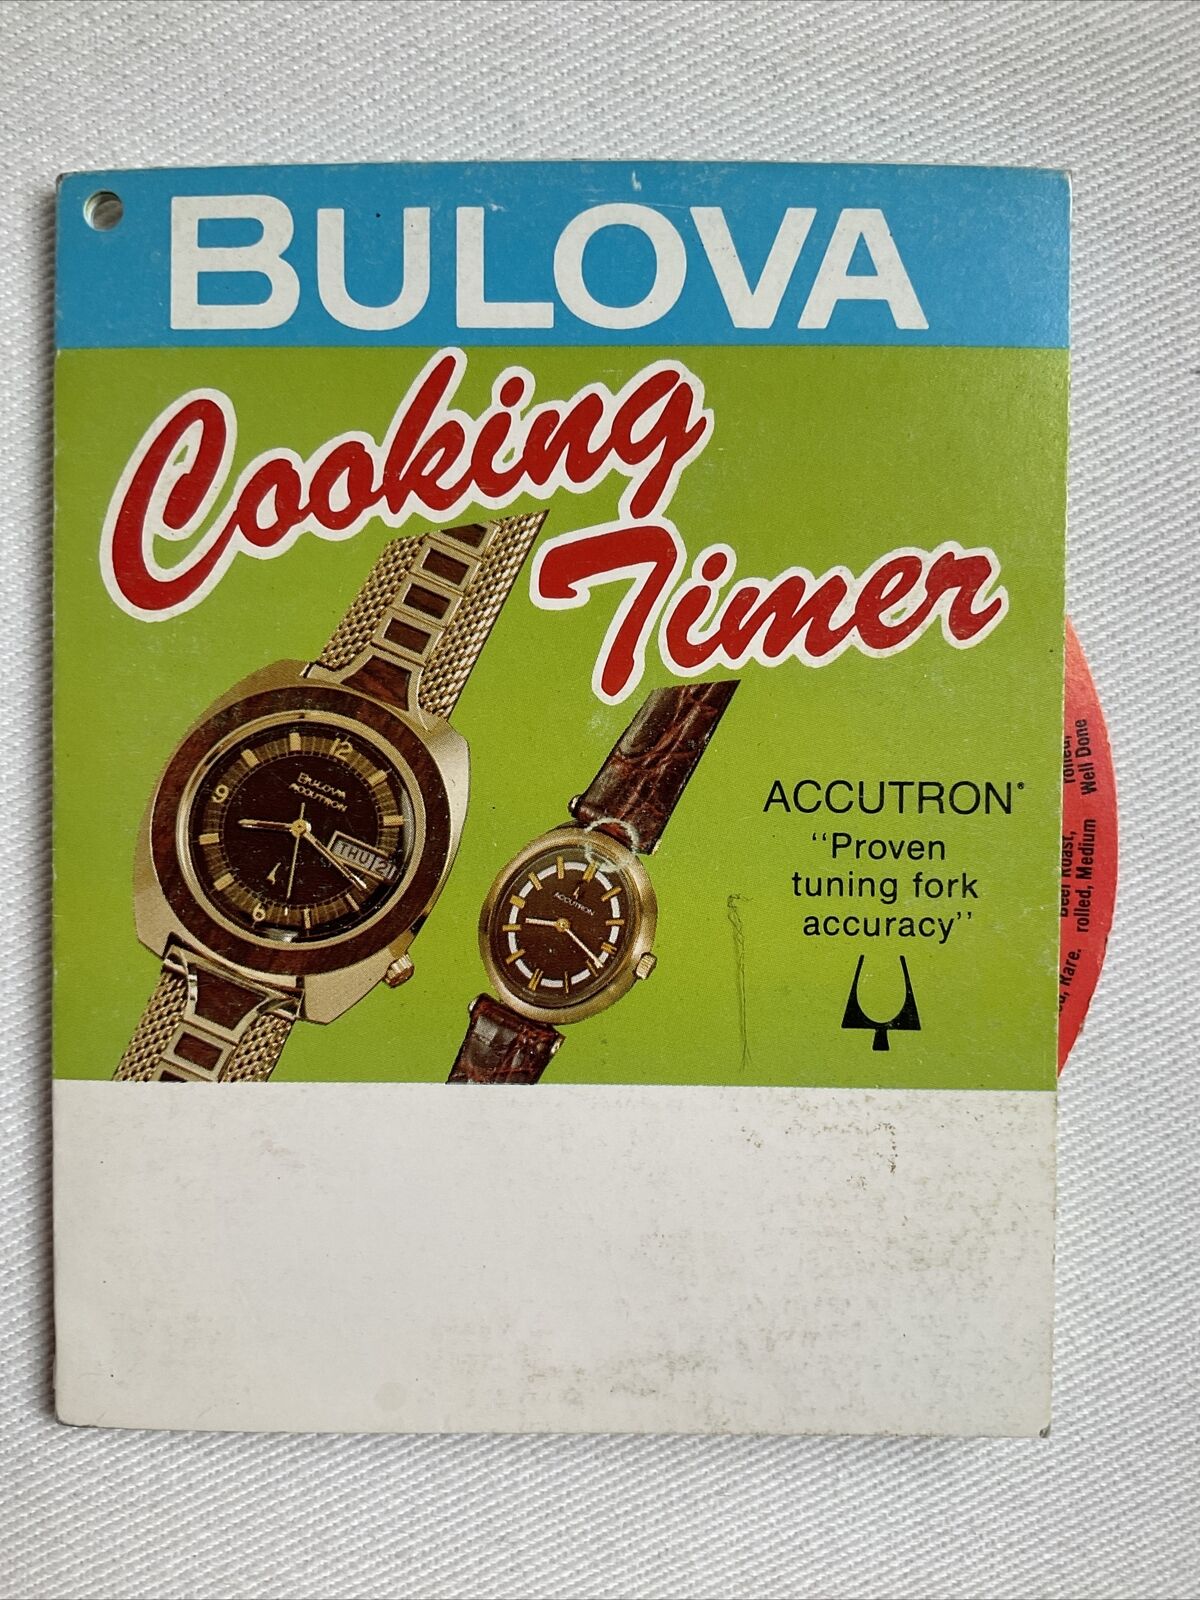 Bulova Cooking Timer Advertising (Wheel) 1974